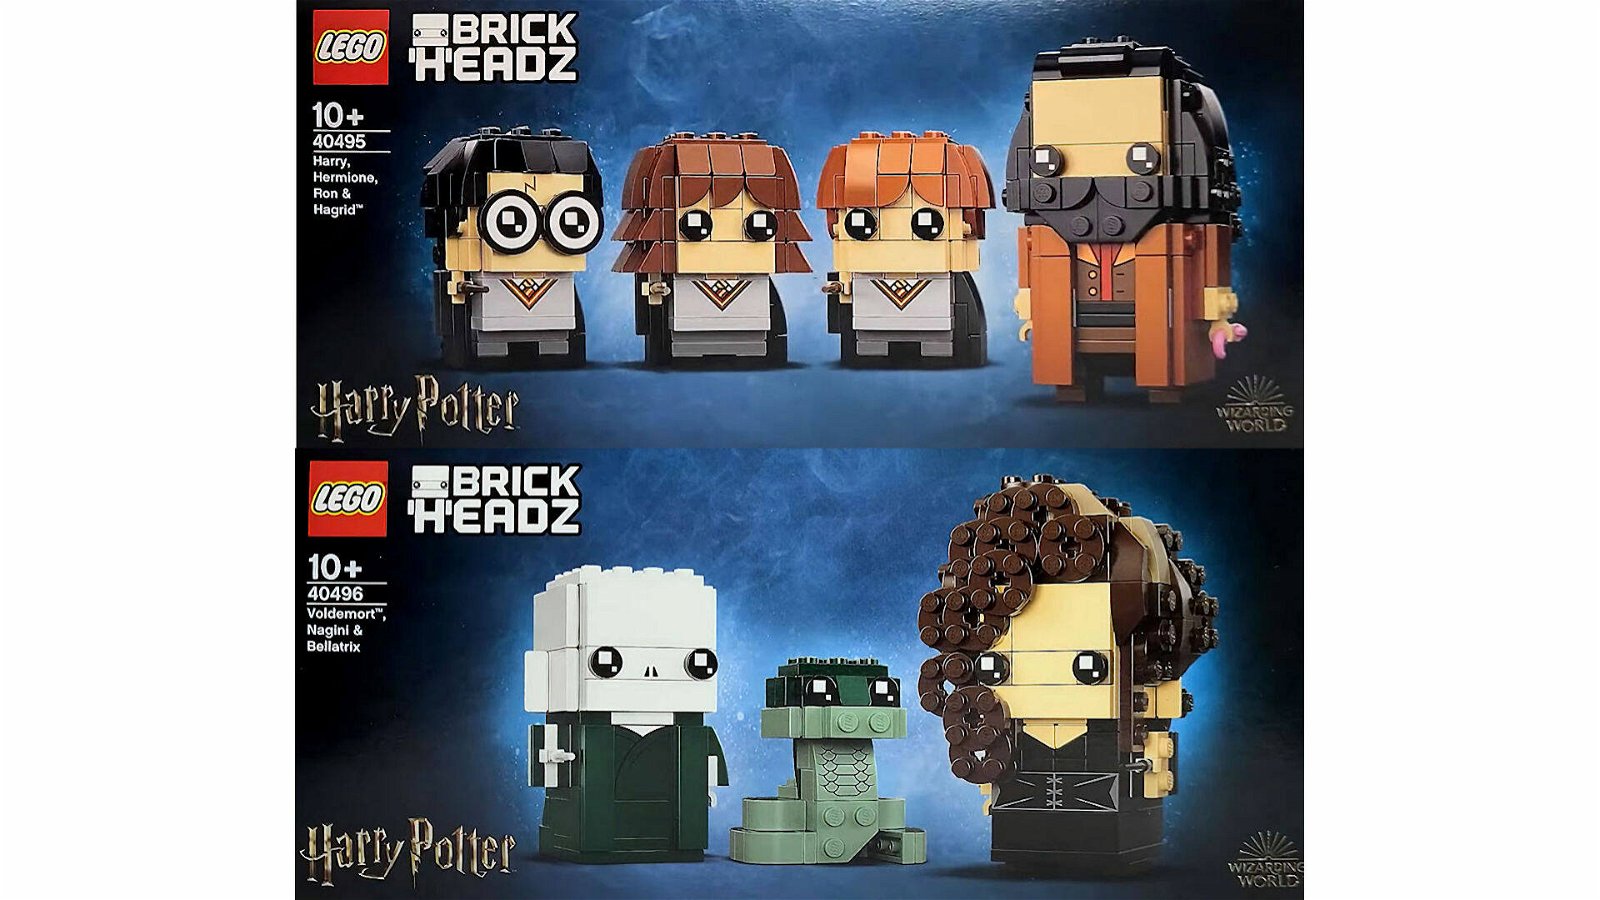 Immagine di LEGO: ancora pochi giorni di attesa per i nuovi set LEGO Brickheadz di Harry Potter